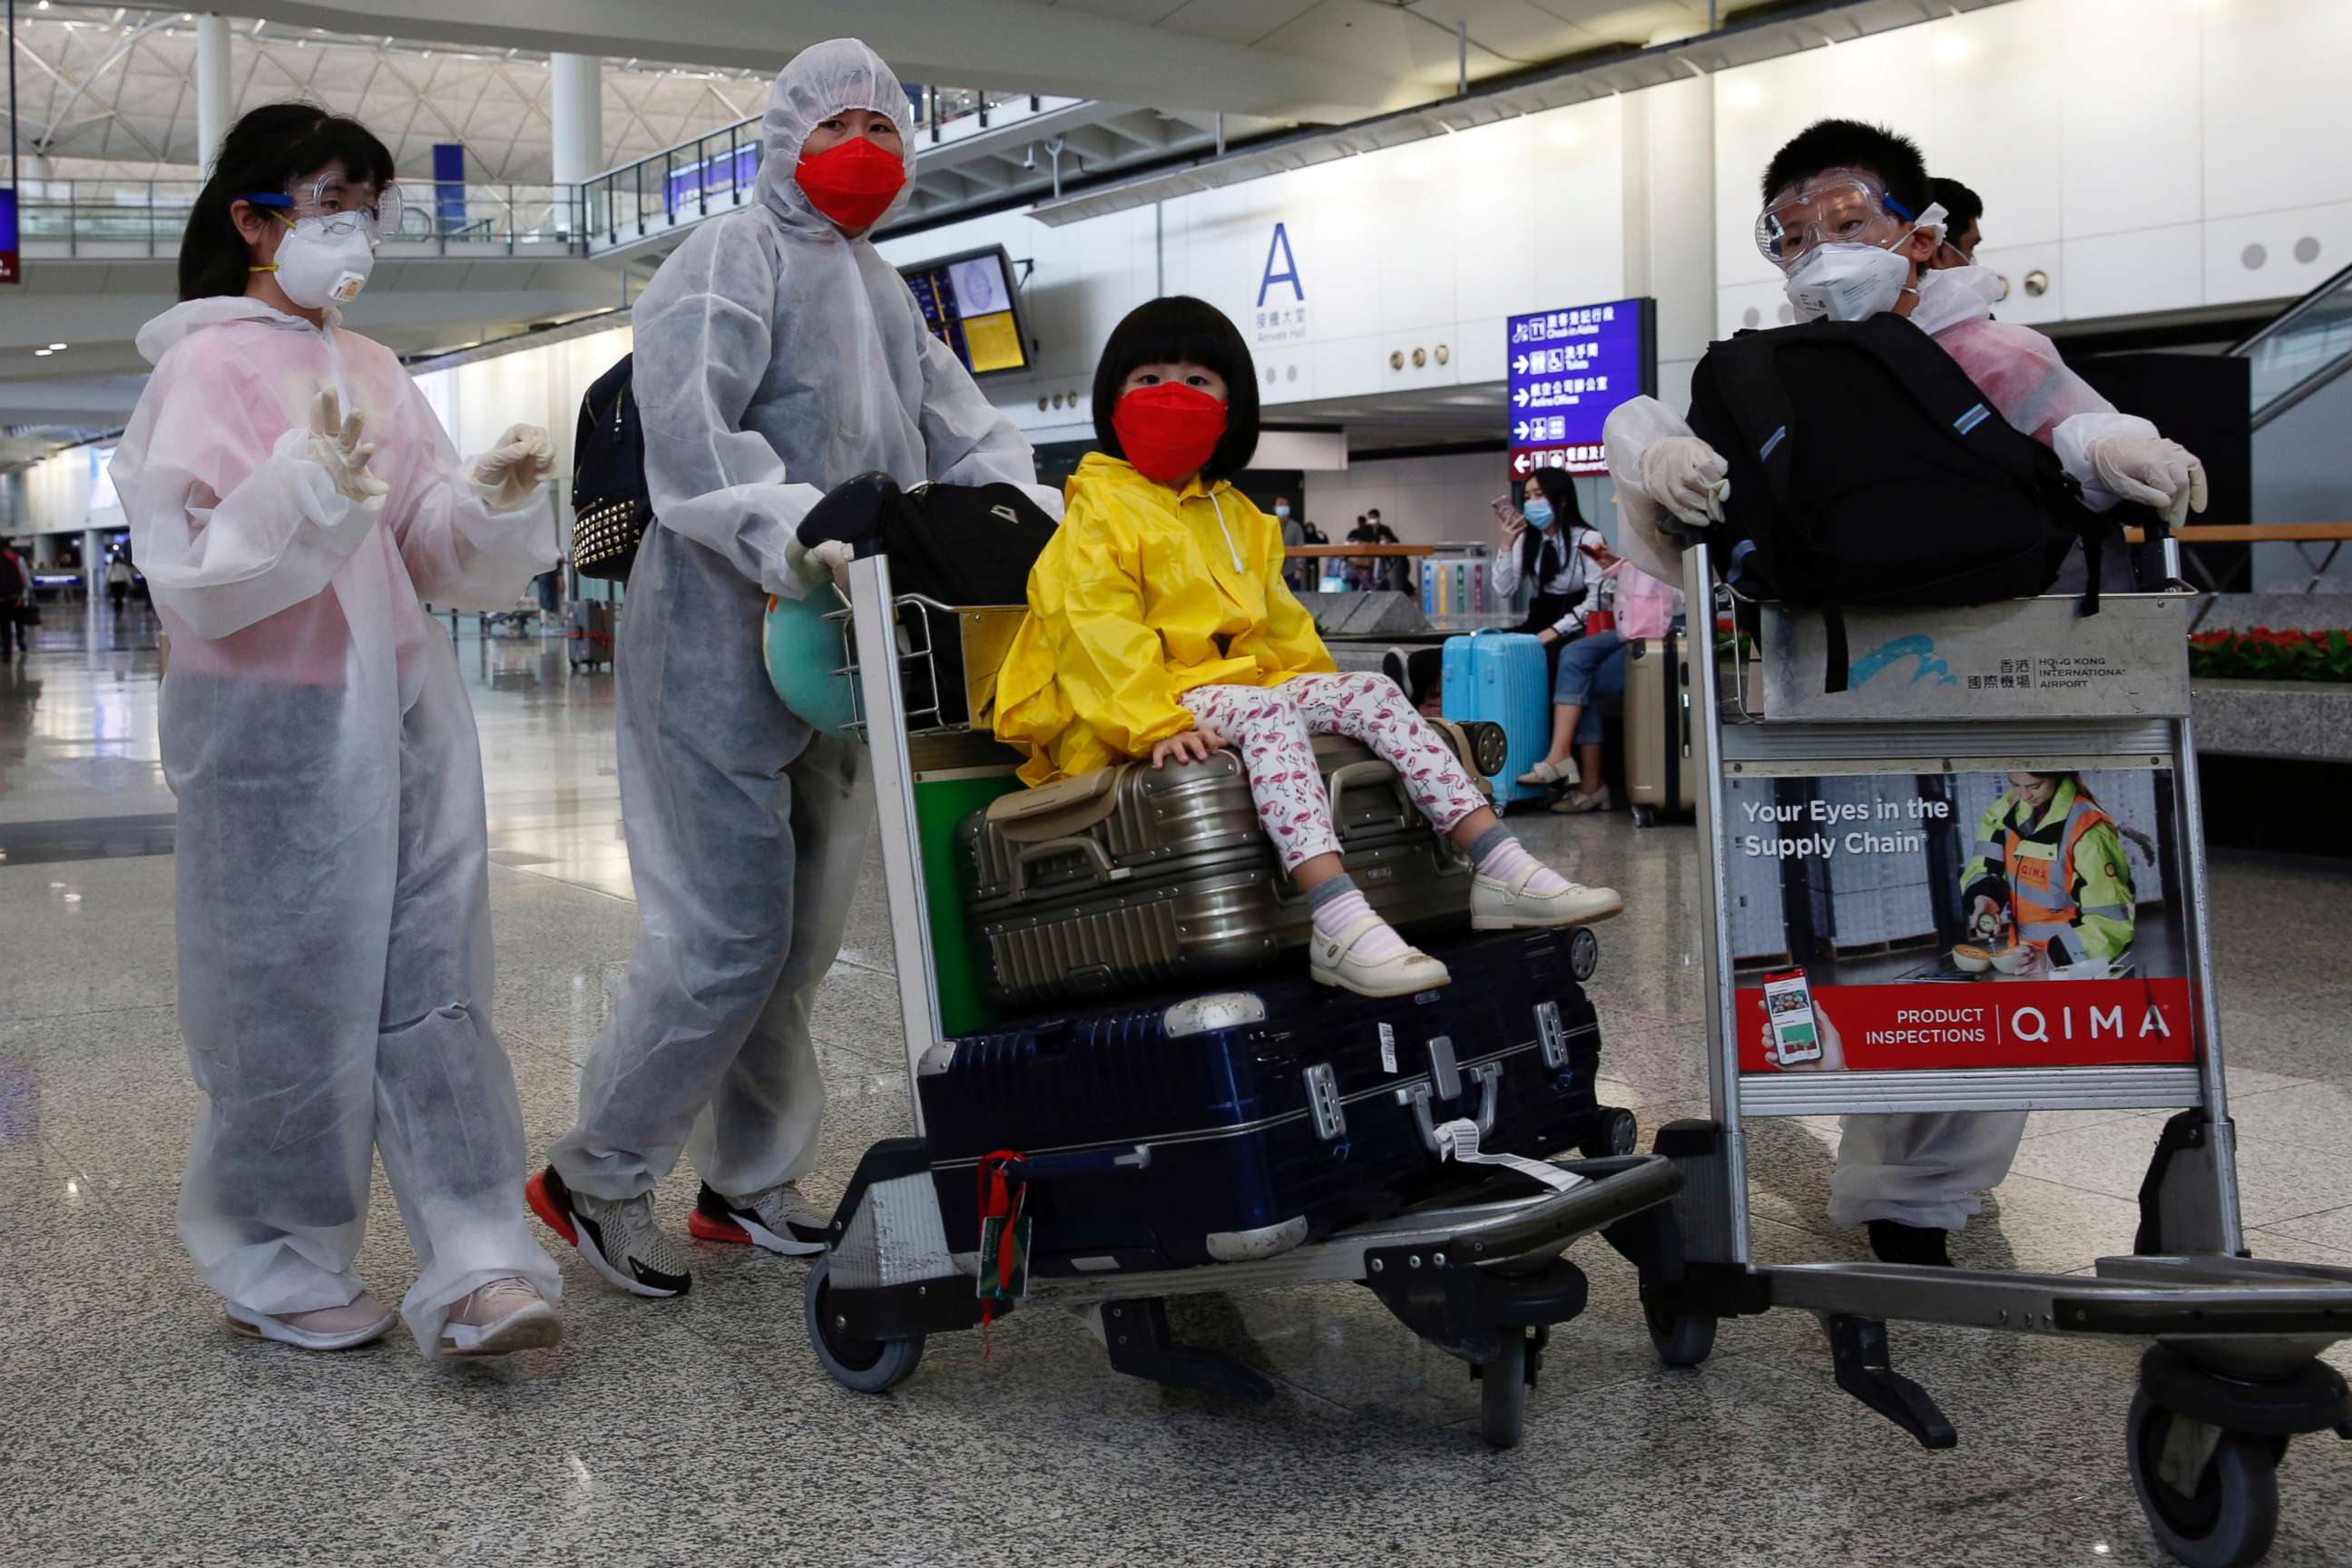 PHOTO: Passengers wear protective suits, amid the outbreak of coronavirus, at Hong Kong International Airport, Hong Kong, China March 17, 2020.